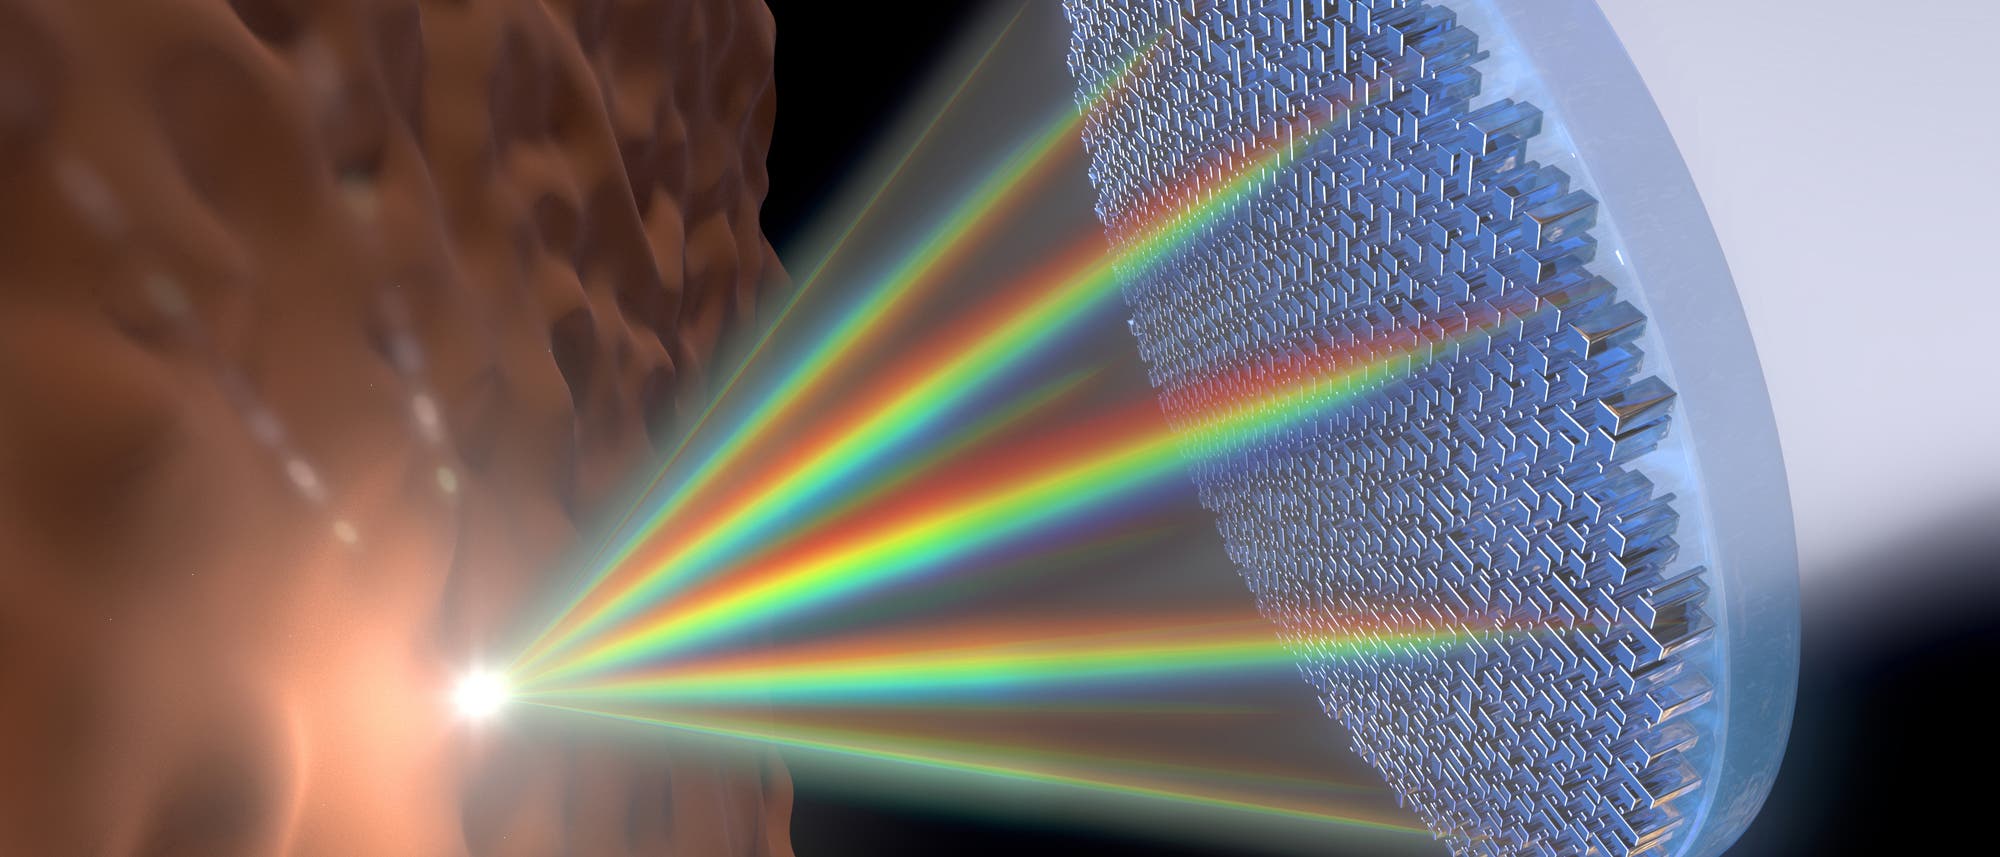 Ein nanostrukturiertes Plättchen bündelt alle Farben aus dem Spektrum  des weißen Lichts auf einen Punkt. Das soll etwa Untersuchungen an Gewebe erleichtern, wie in dieser Illustration.